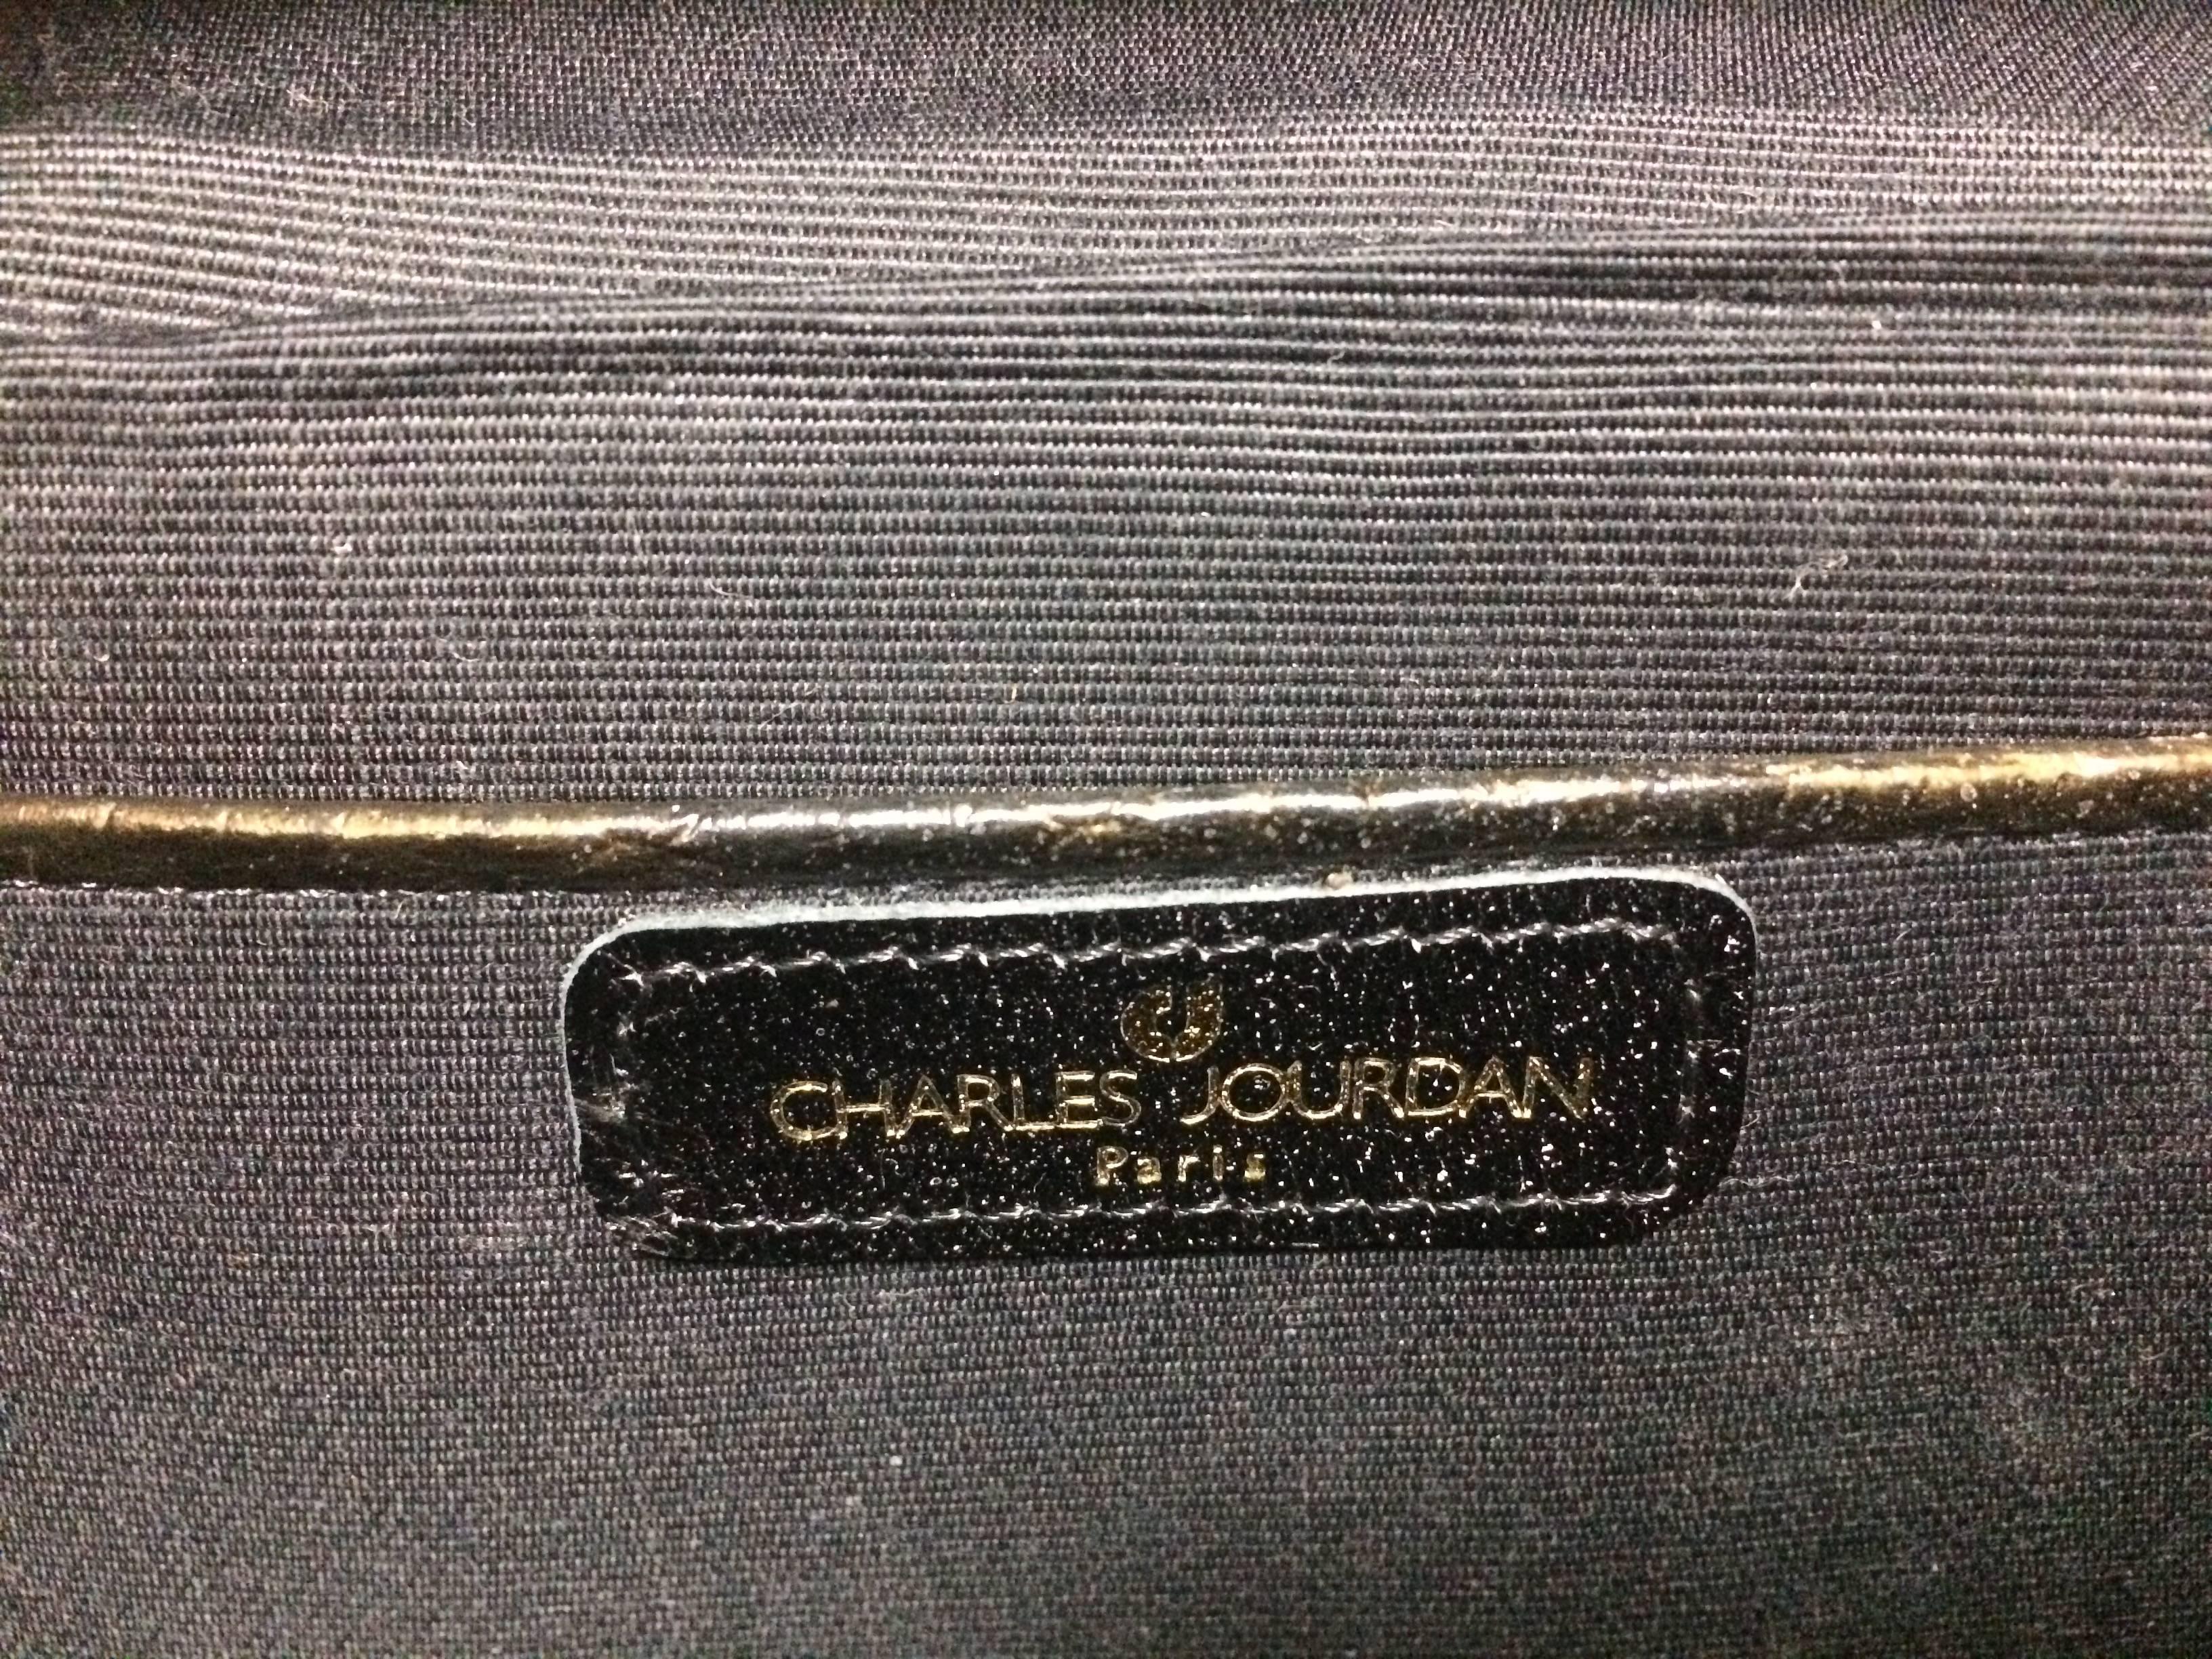 Vintage Charles Jourdan bronze gold croc embossed leather vanity bag. 4